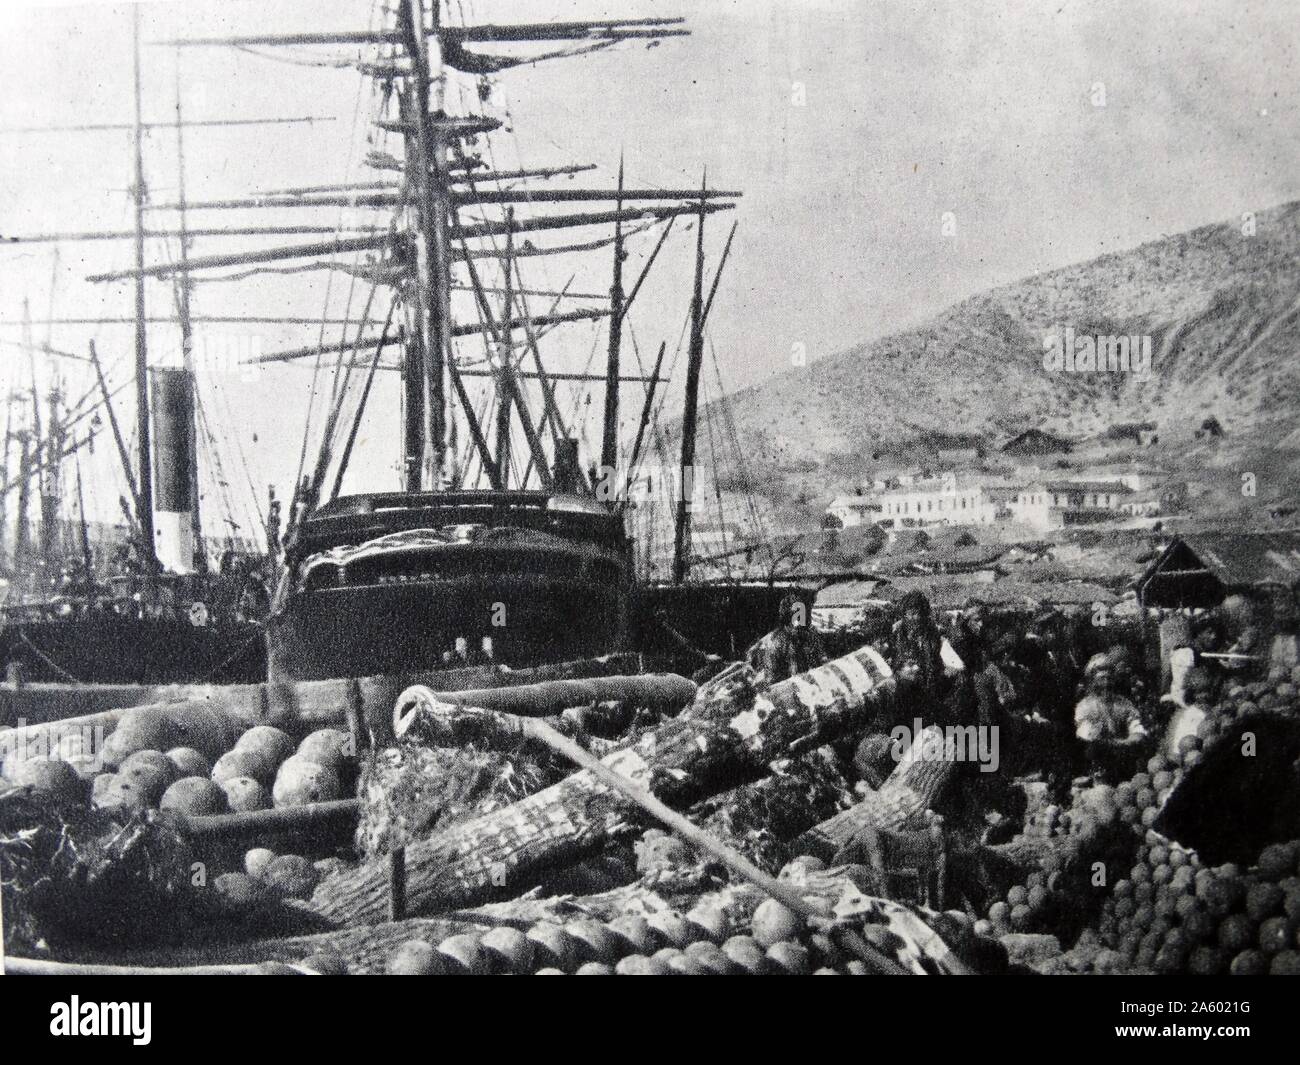 L'ordnance wharf, passamontagna 1855 fotografata da Roger Fenton. Fenton è stato il pioniere della fotografia di guerra che ha stabilito la sua reputazione durante la guerra di Crimea 1853-1855 Foto Stock